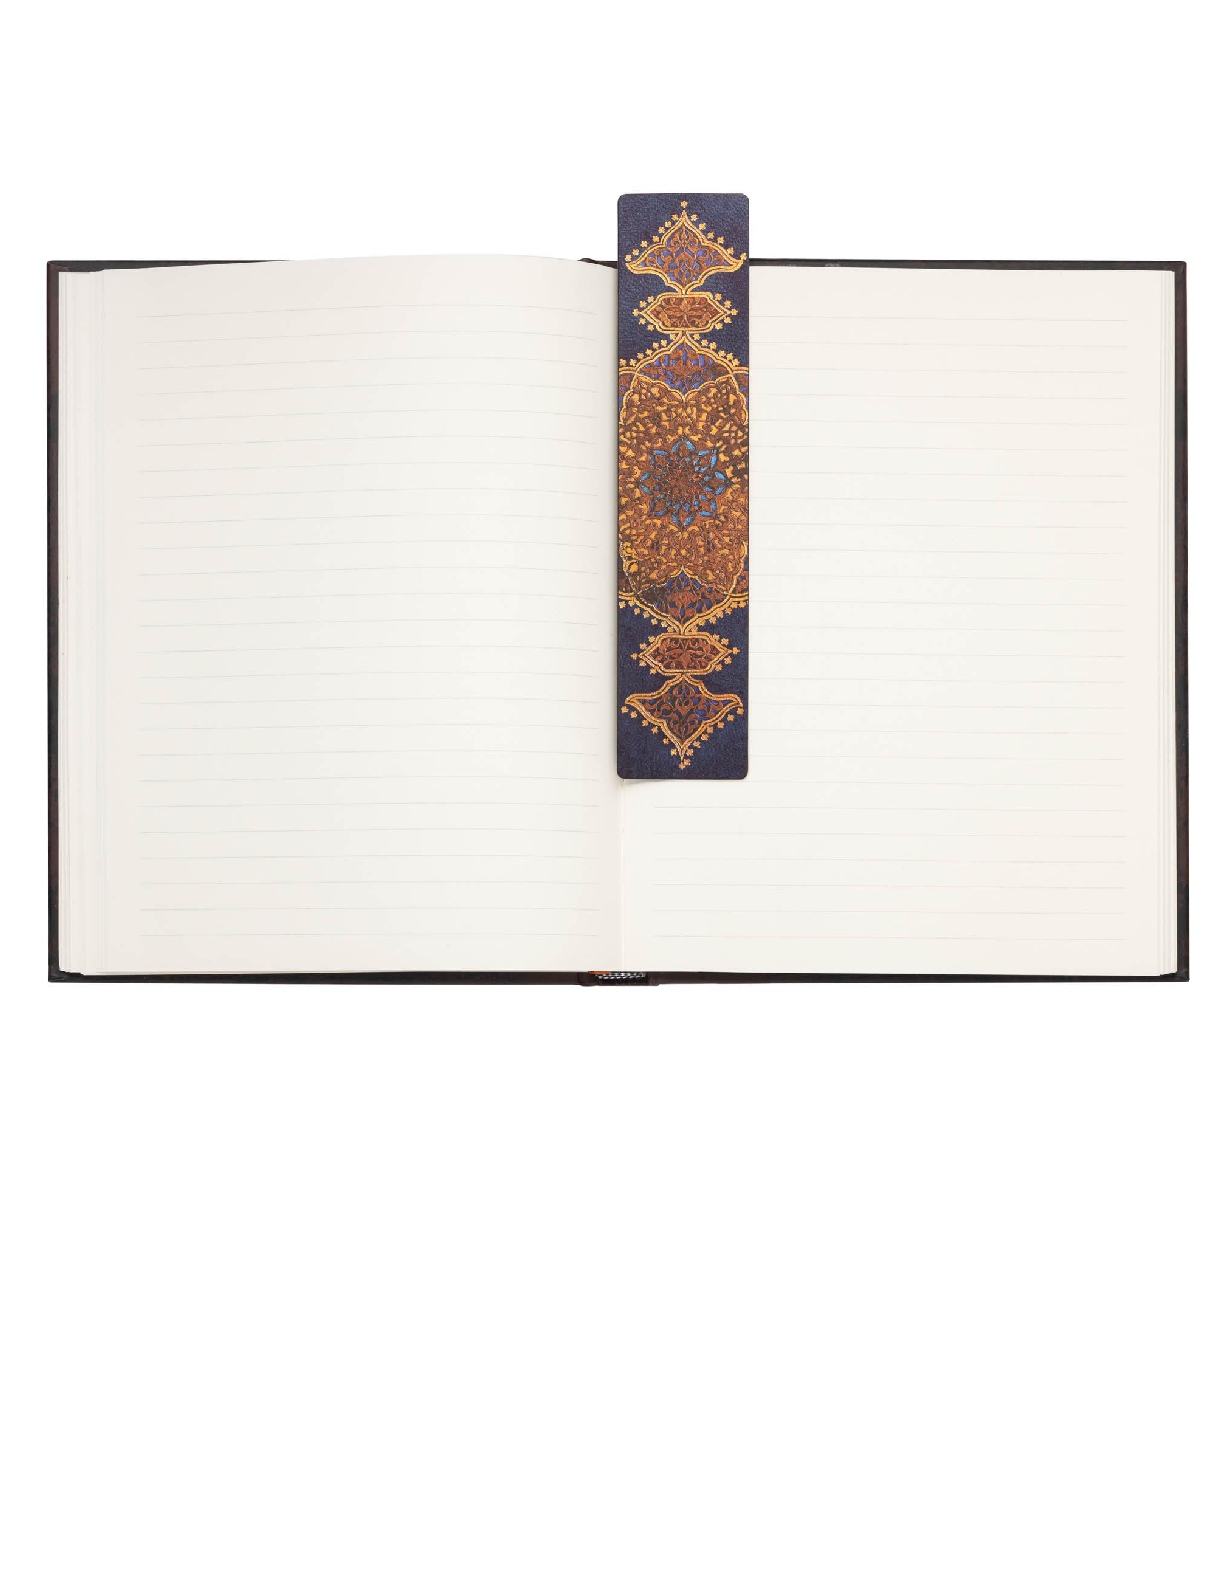 Safavid Indigo, Safavid Binding Art, Bookmark